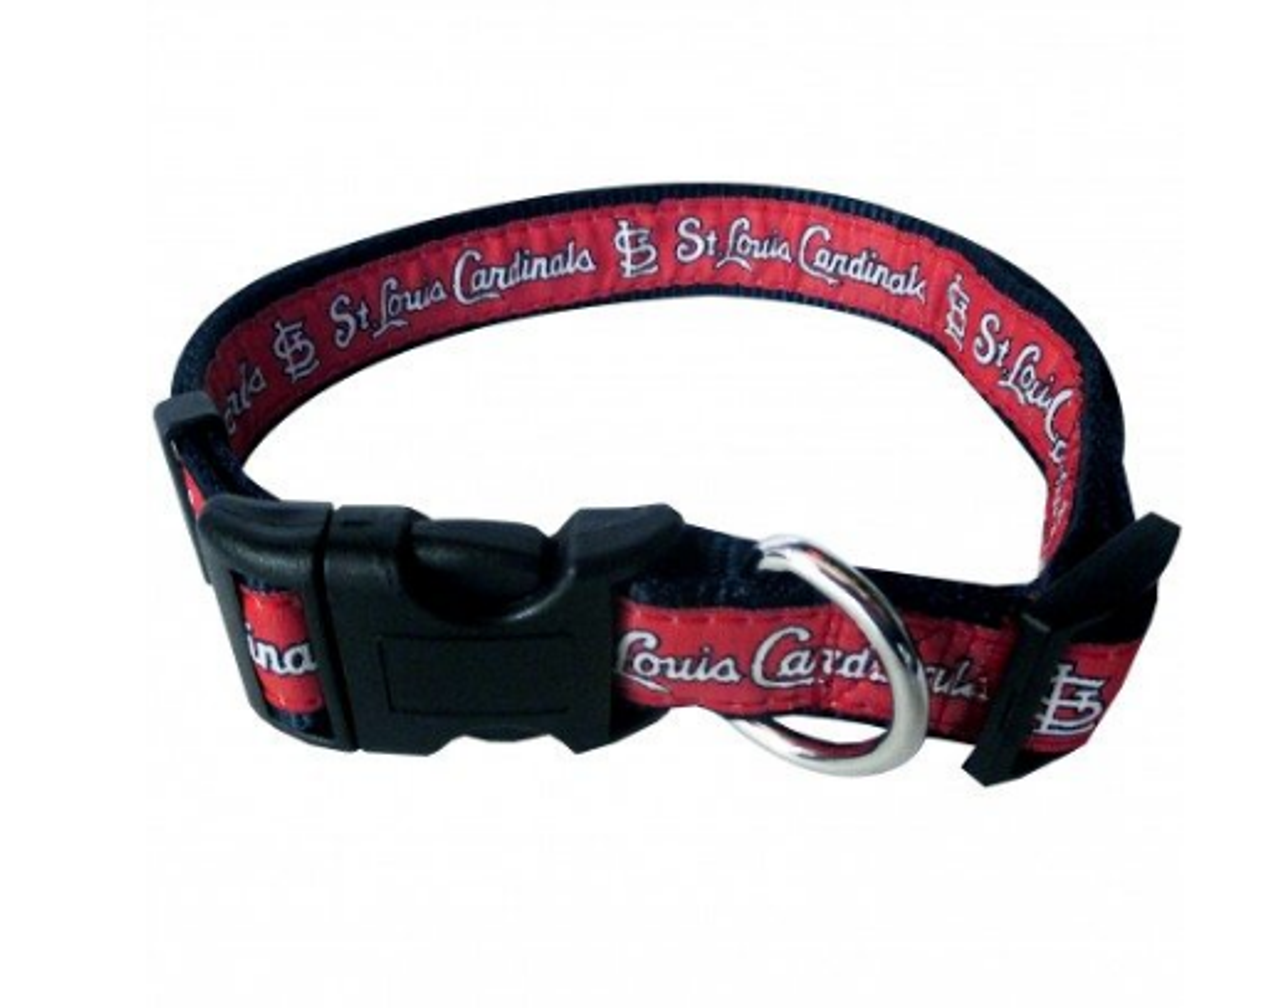 St. Louis Cardinals Dog Collar